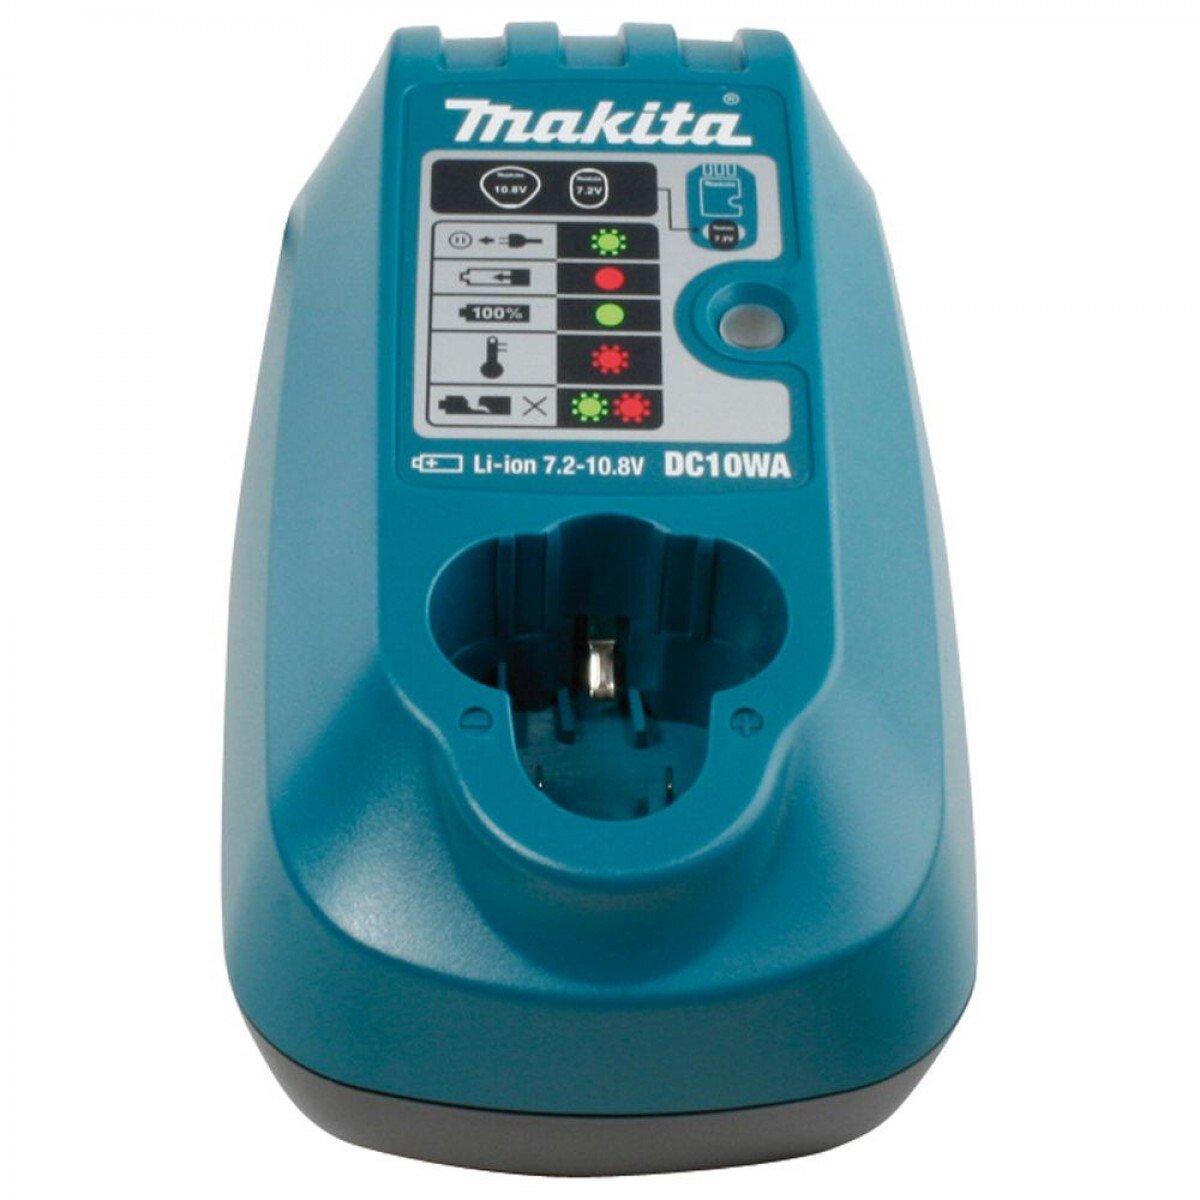 Makita DC10WA Charger for 7.2v - 10.8v Li-ion Batteries (240v) (Replaces DC07SA)